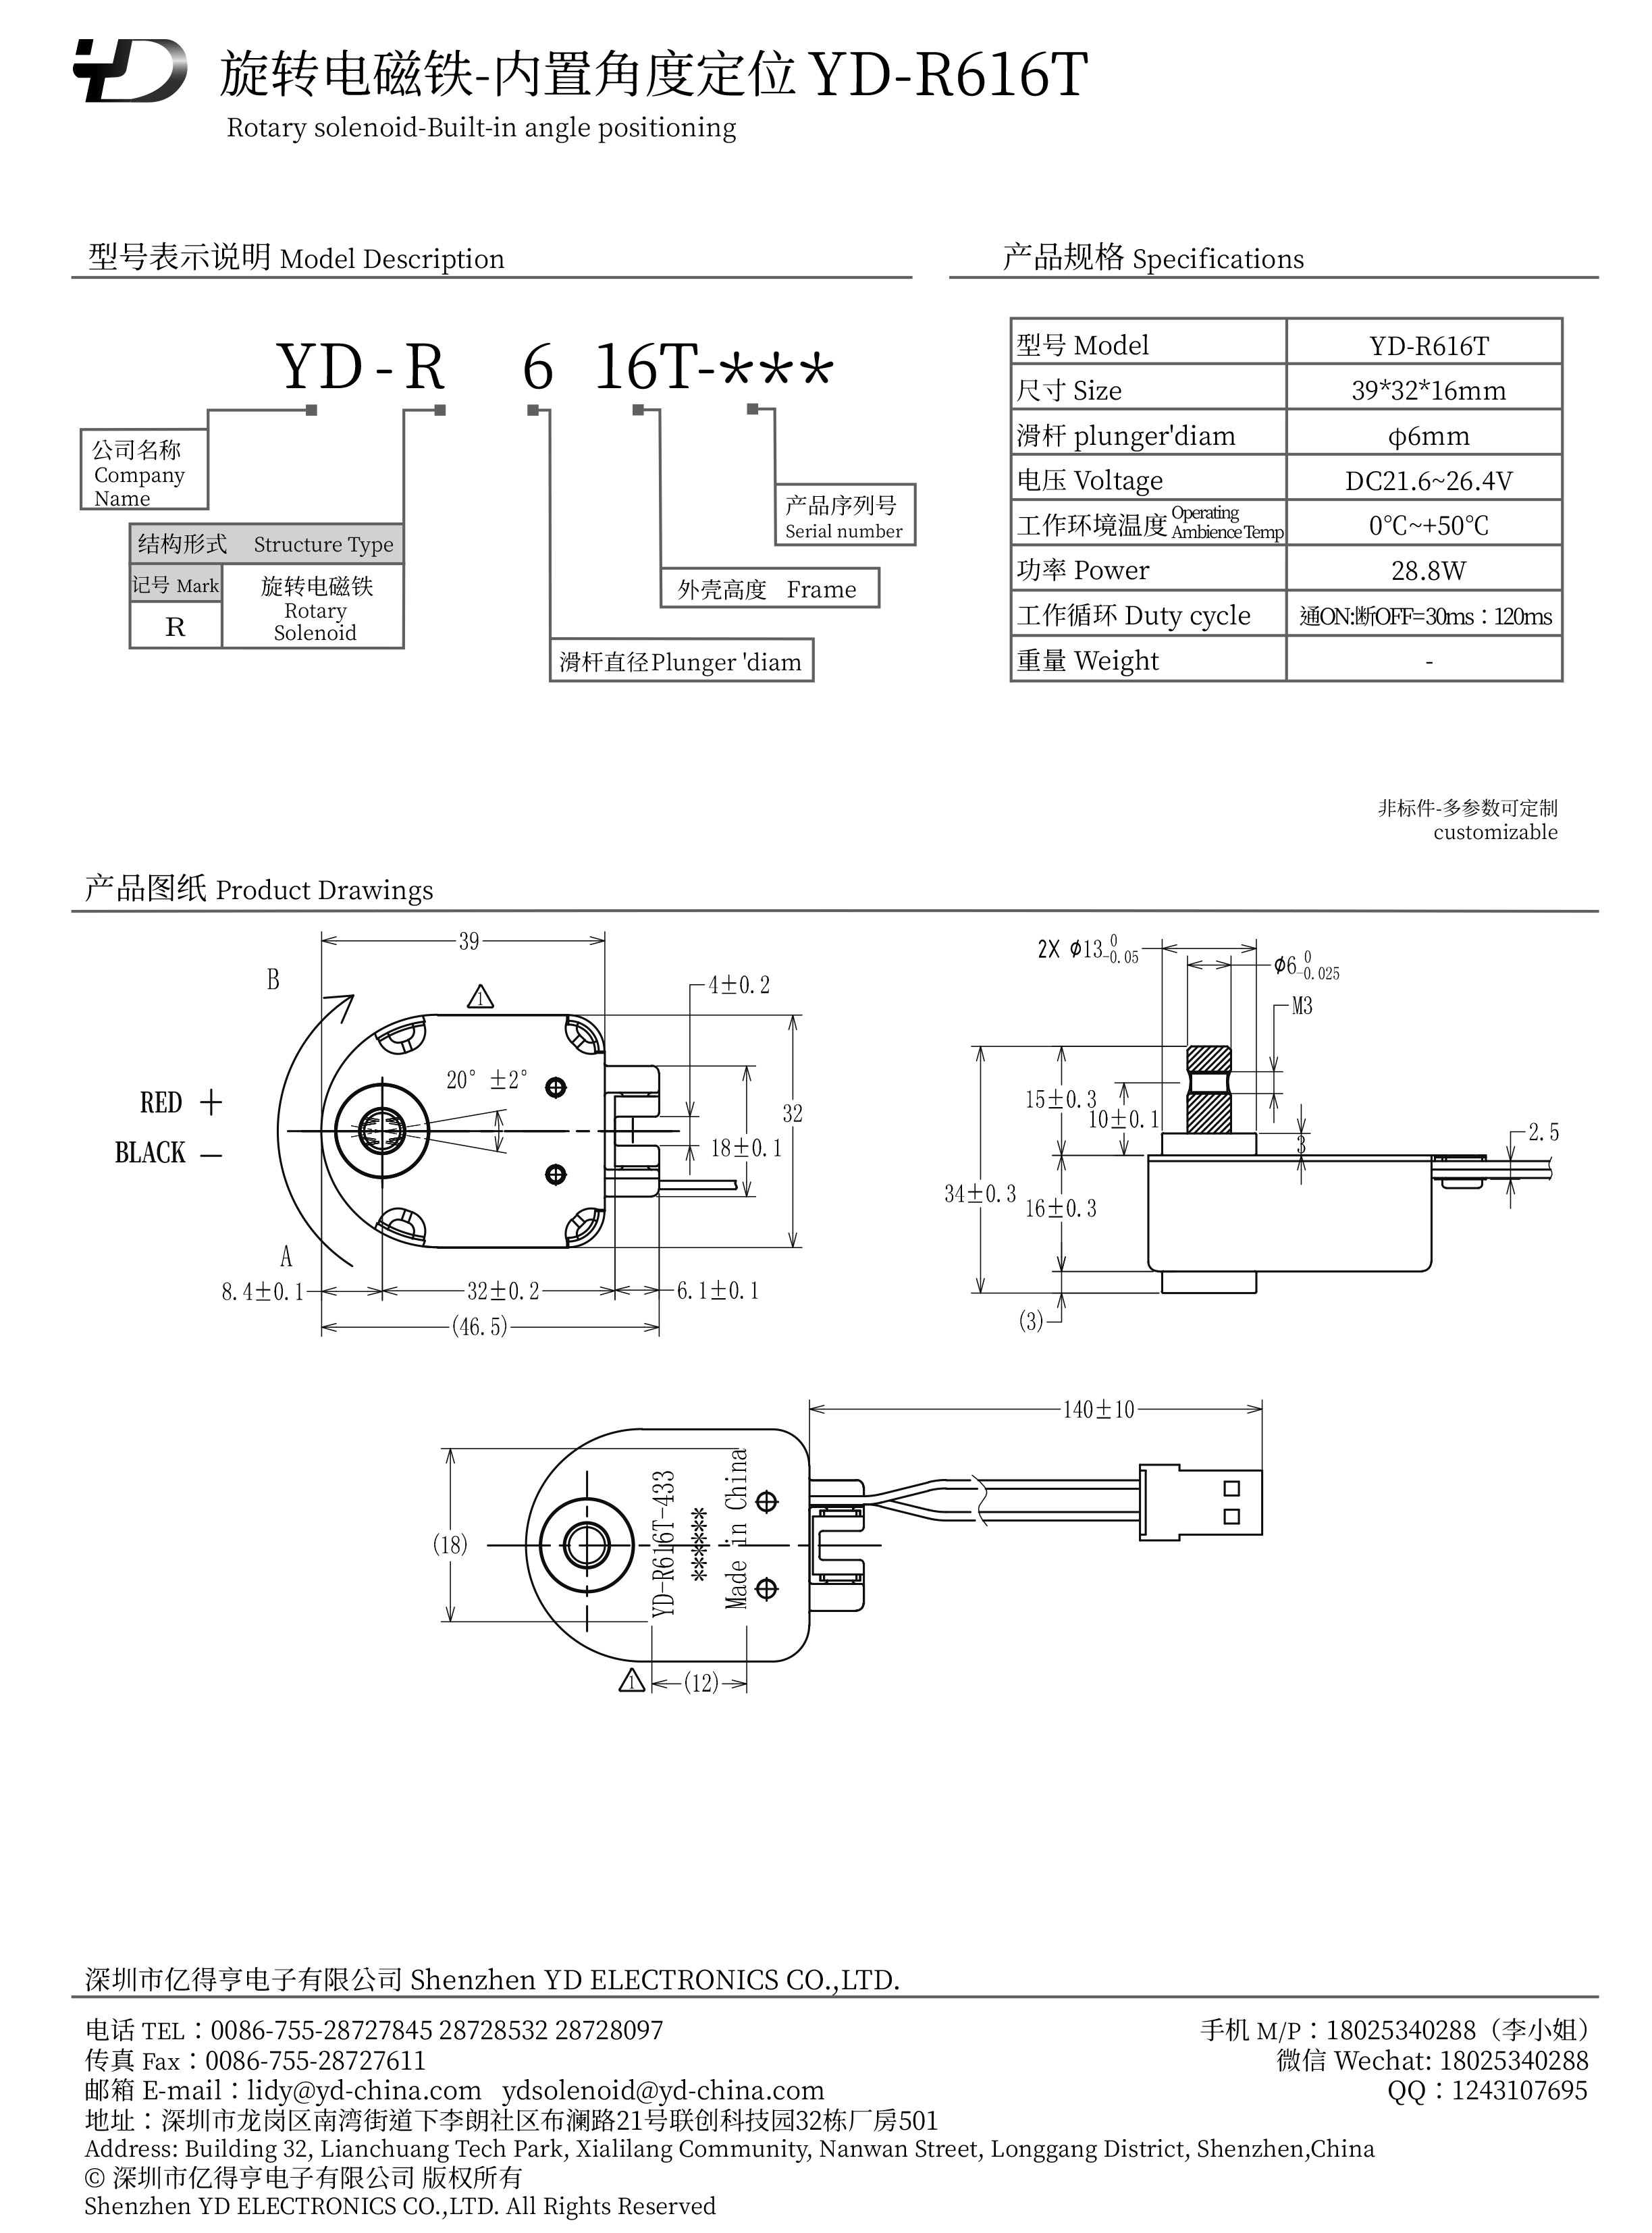 YD-R616T-PDF.jpg